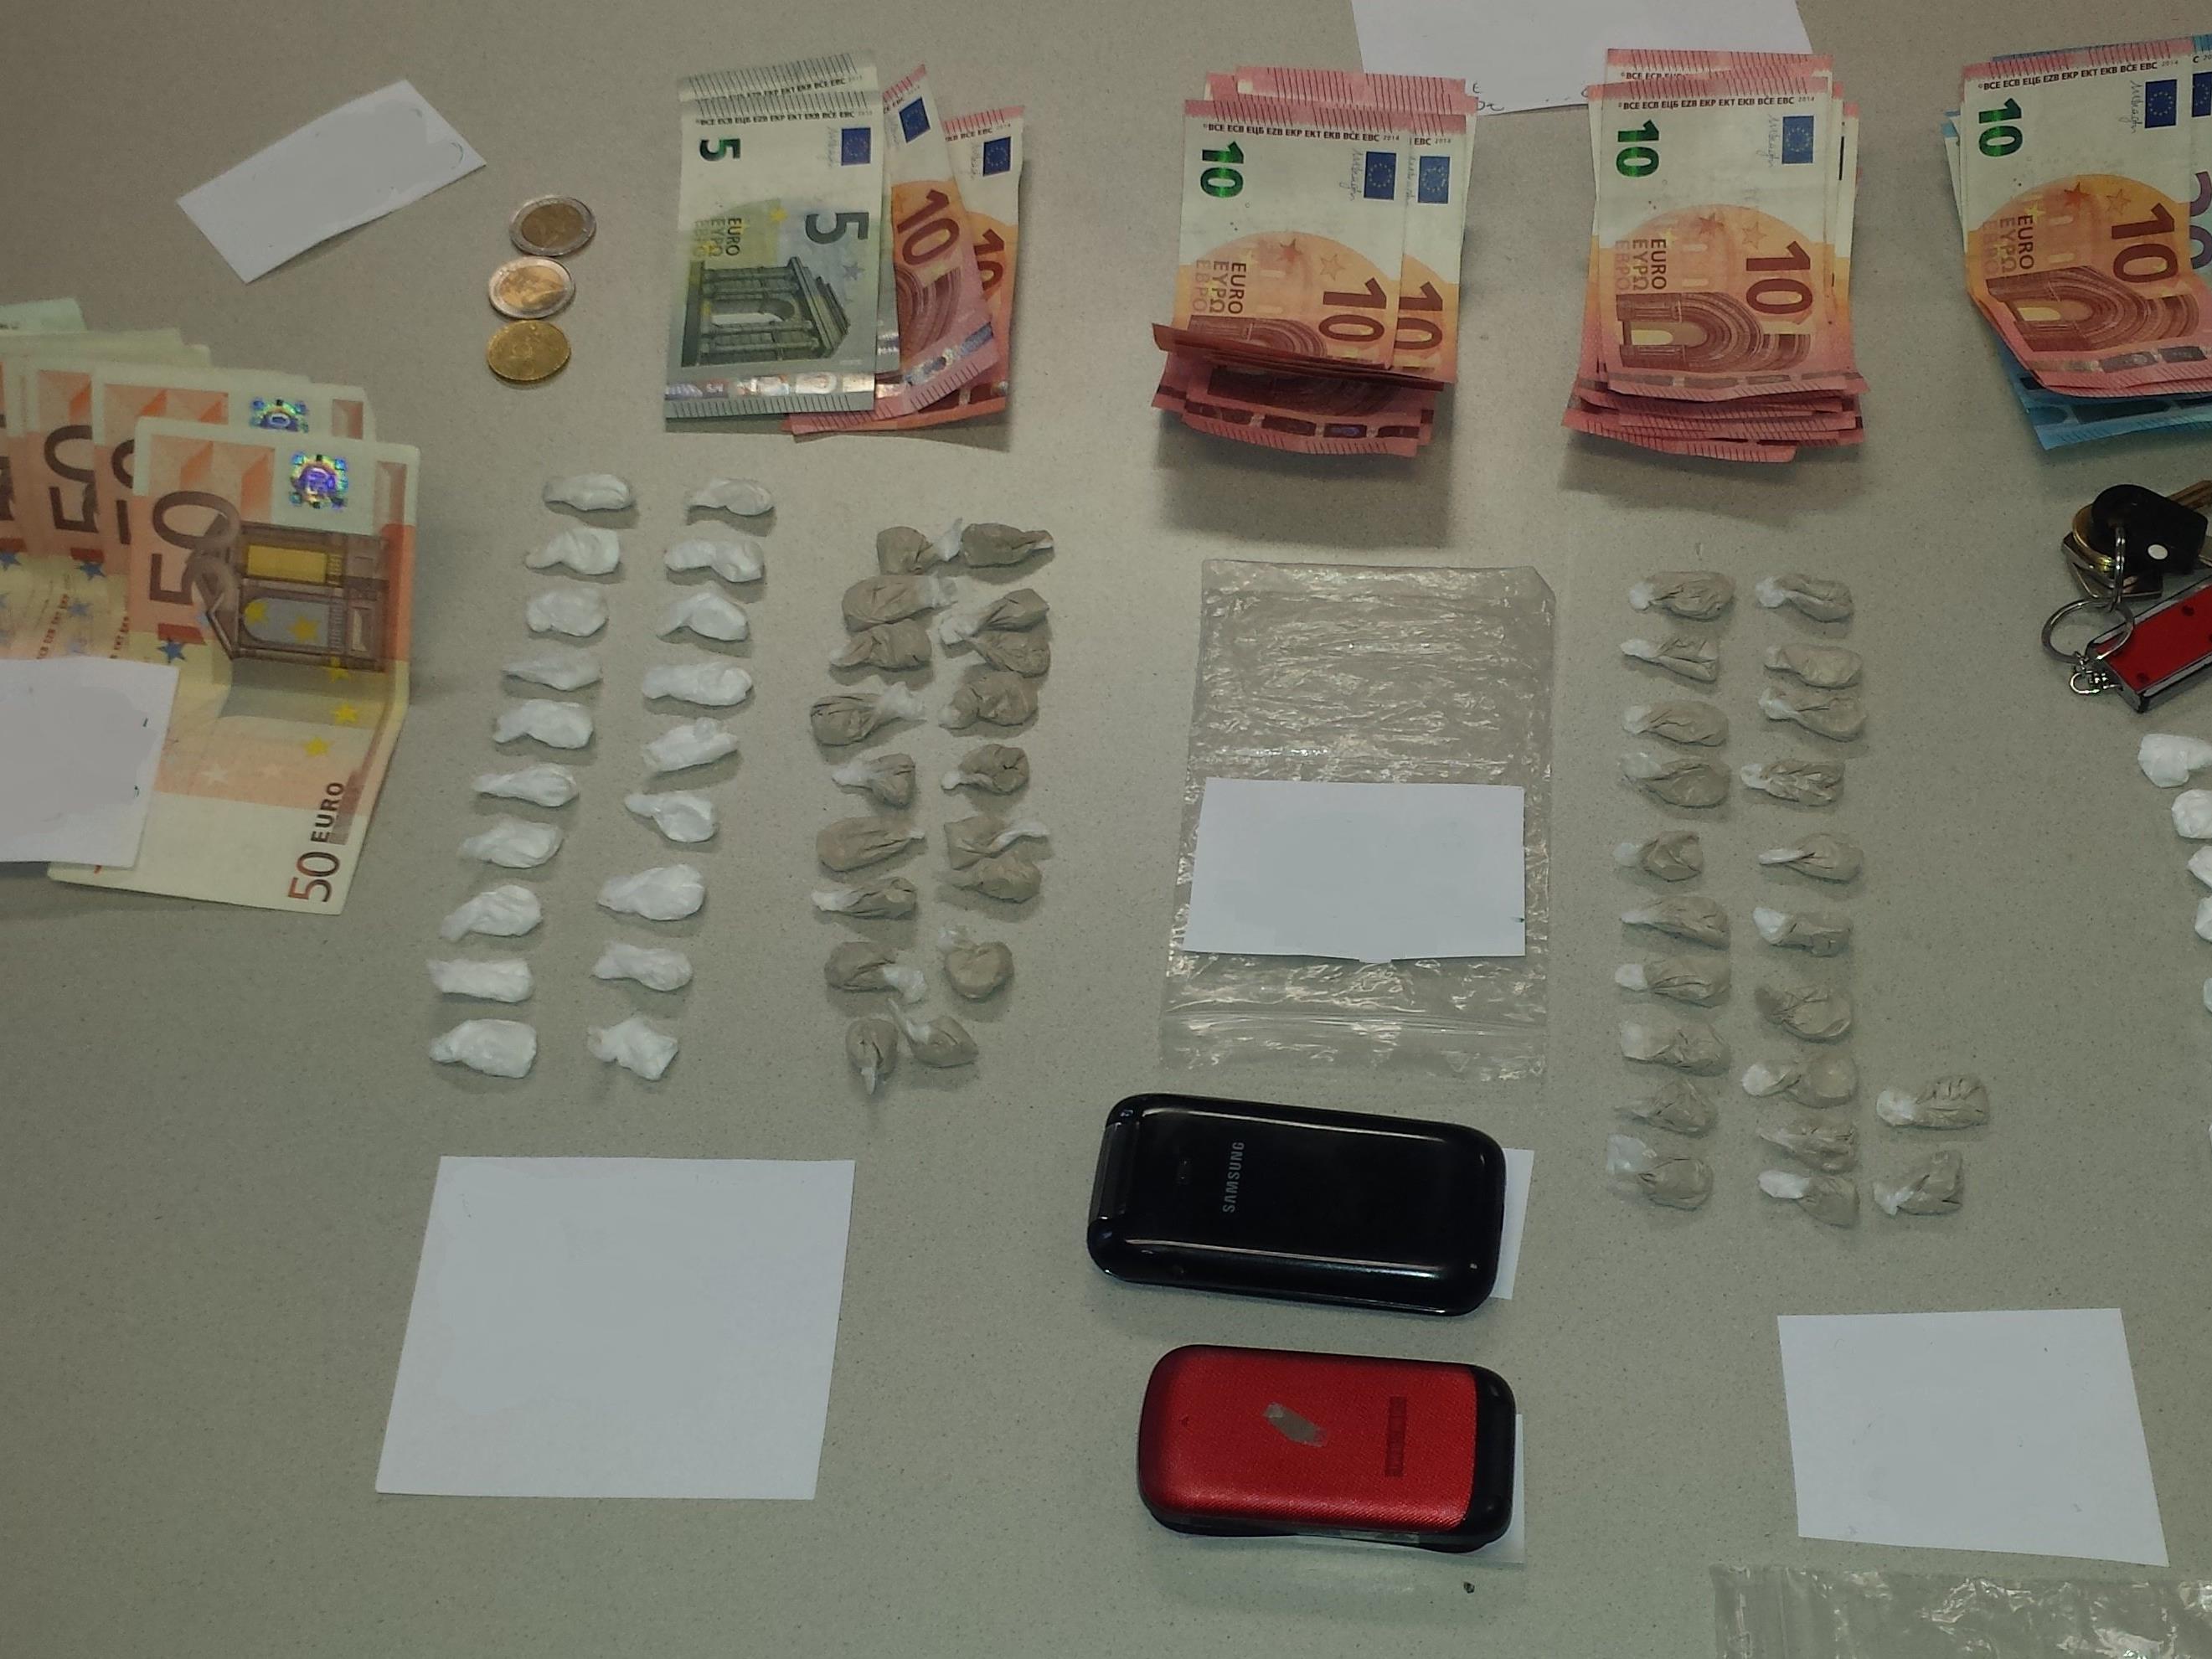 Zwei mutmaßliche Drogendealer wurden festgenommen